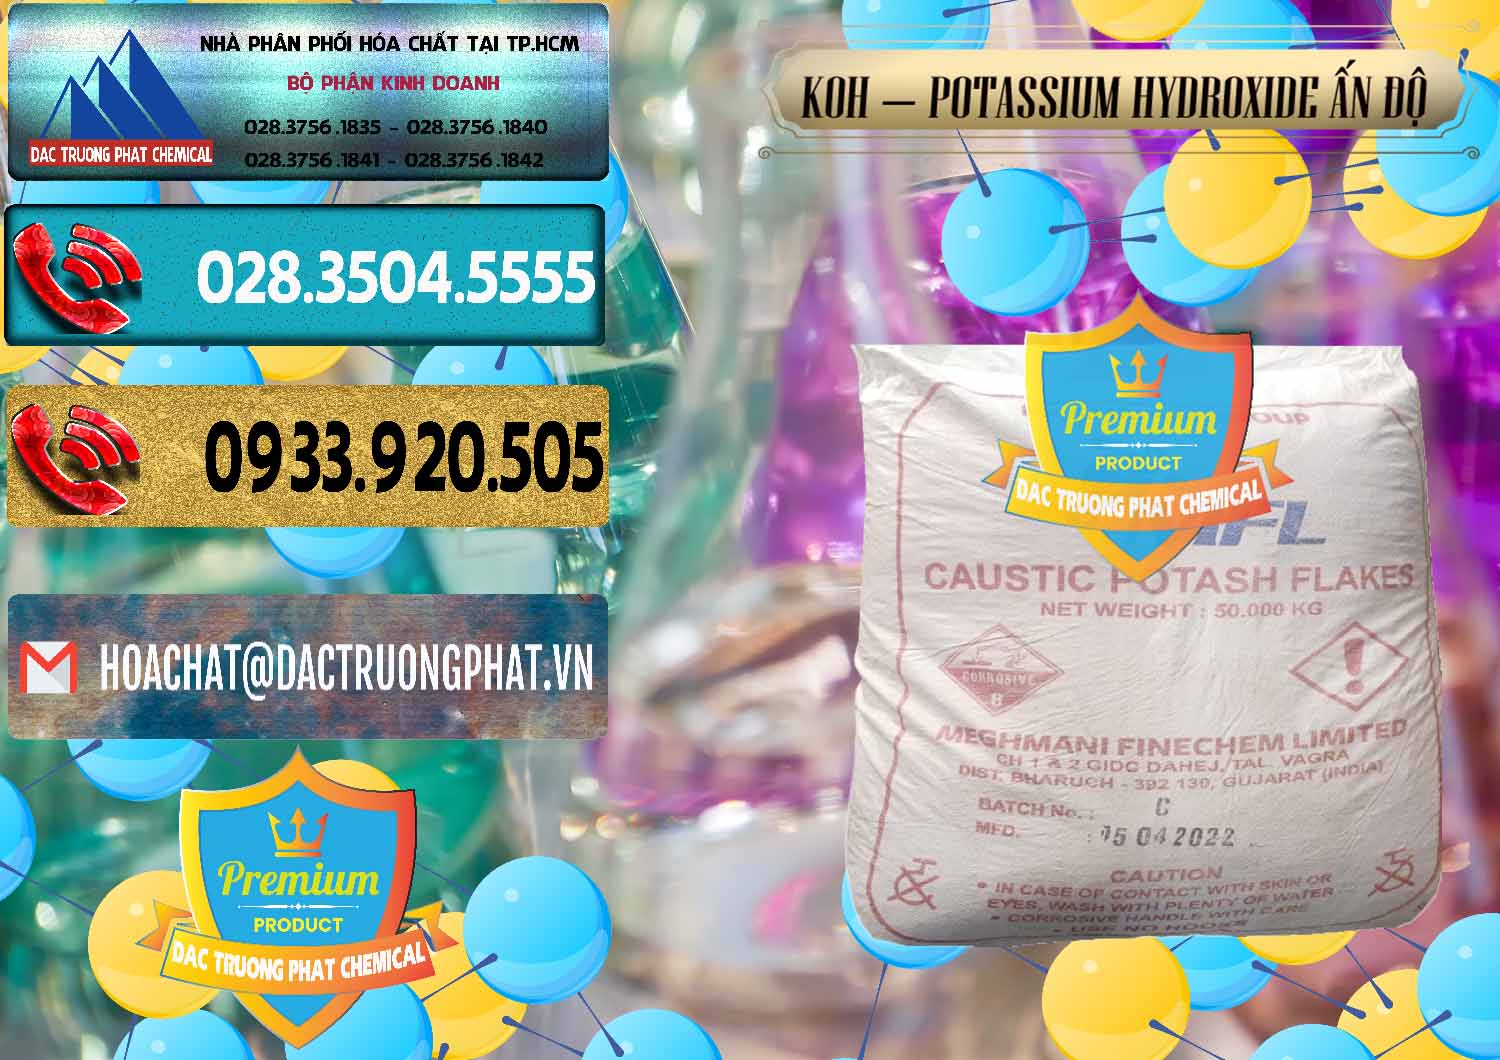 Cty chuyên kinh doanh ( bán ) KOH ( 90%) – Potassium Hydroxide Ấn Độ India - 0352 - Nơi chuyên bán và phân phối hóa chất tại TP.HCM - hoachatdetnhuom.com